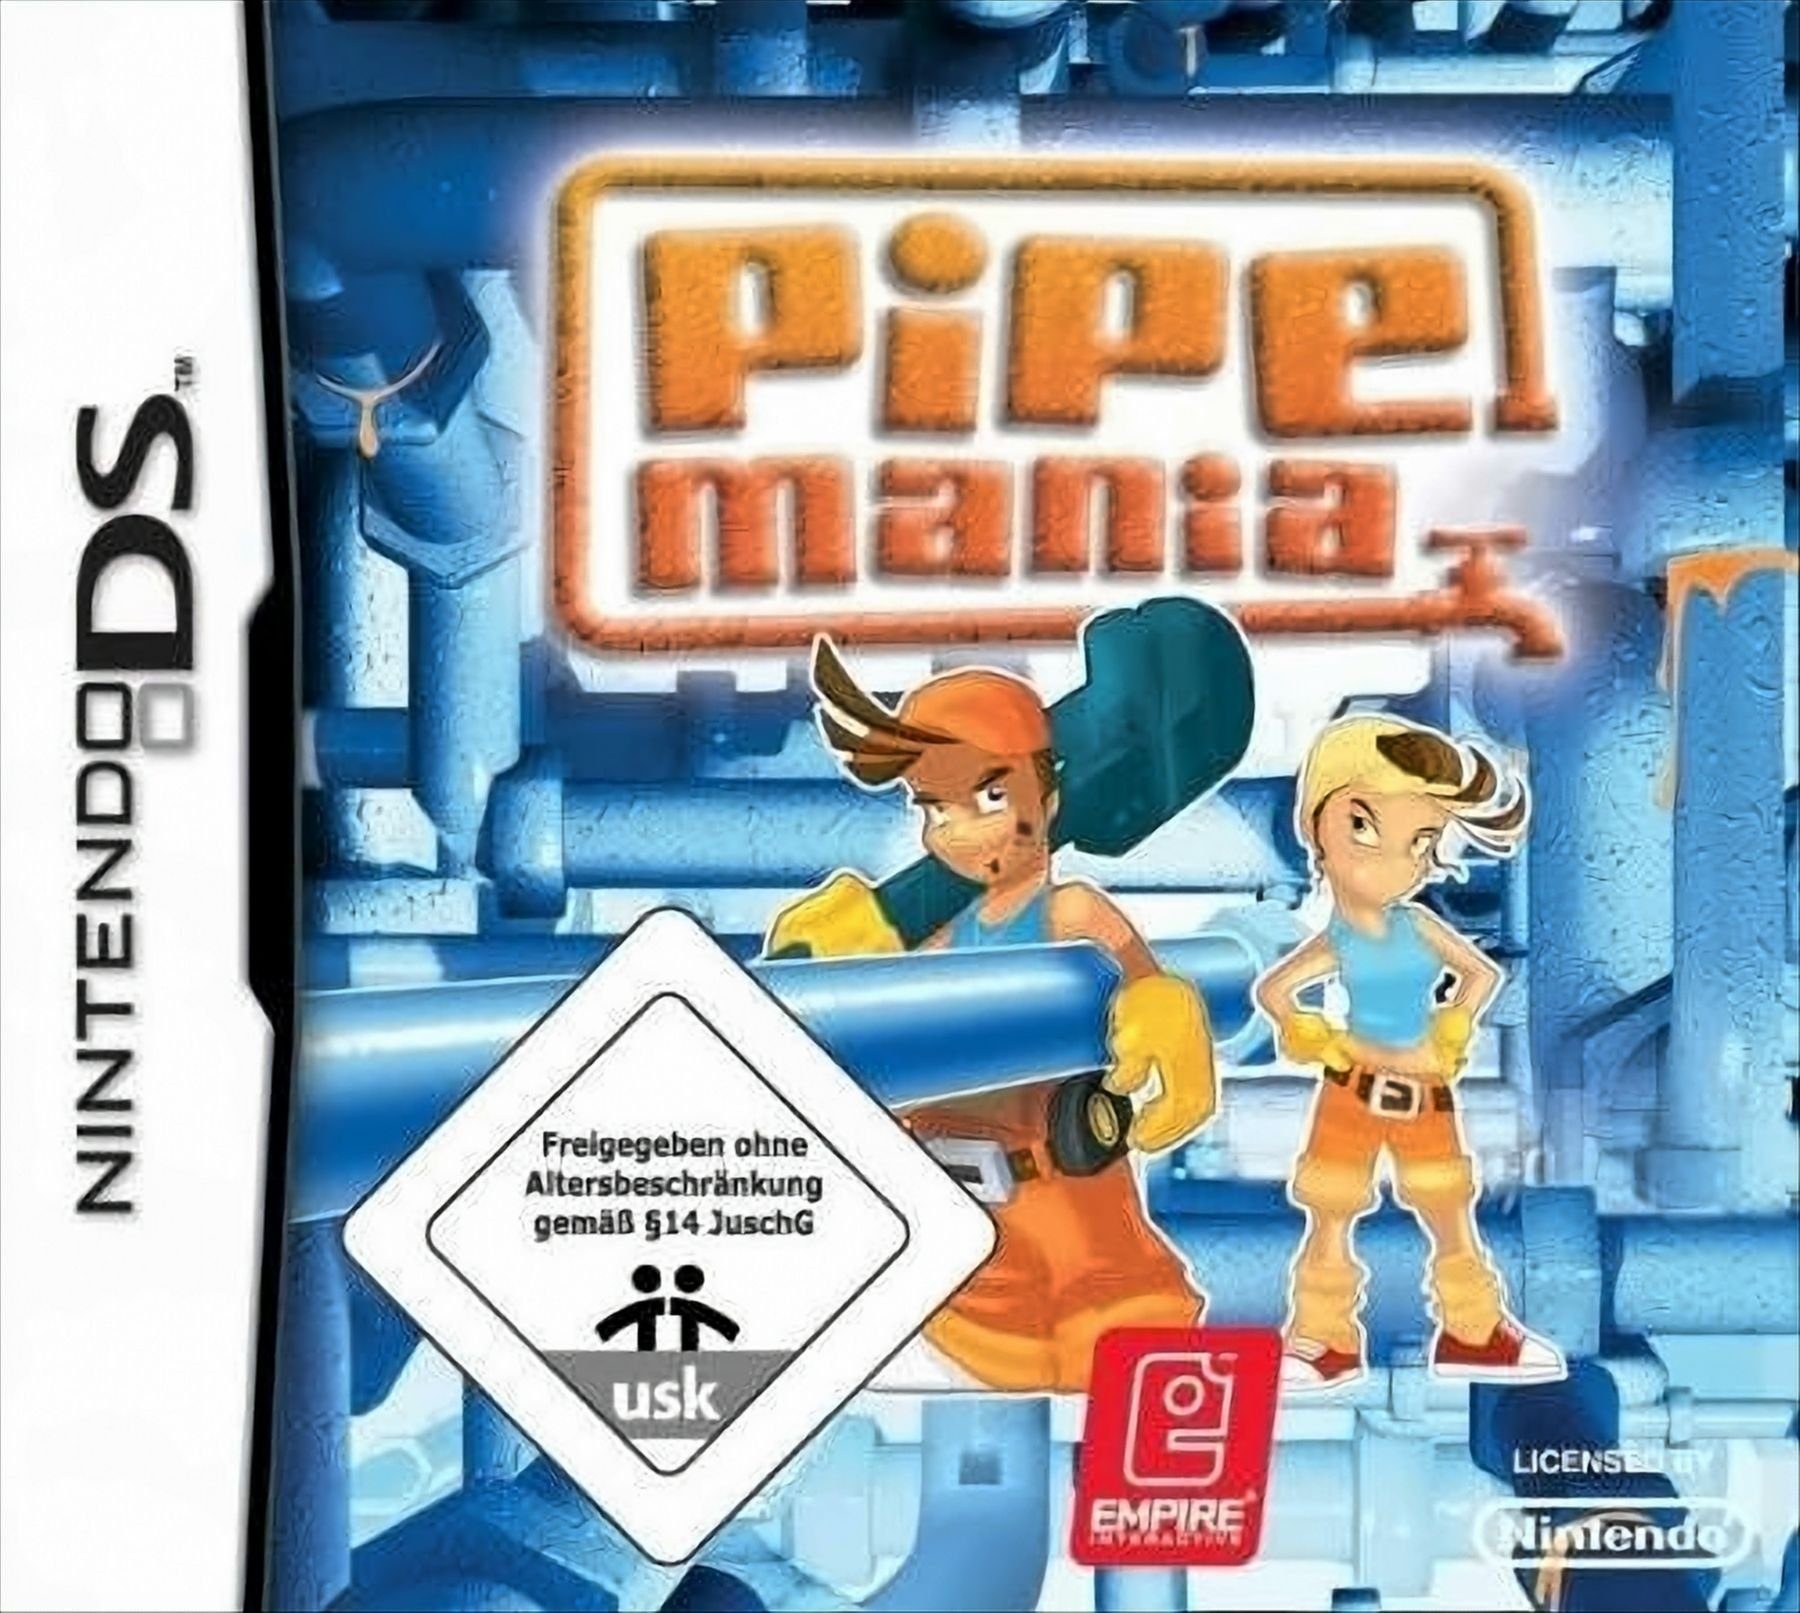 Pipe Mania Nintendo DS